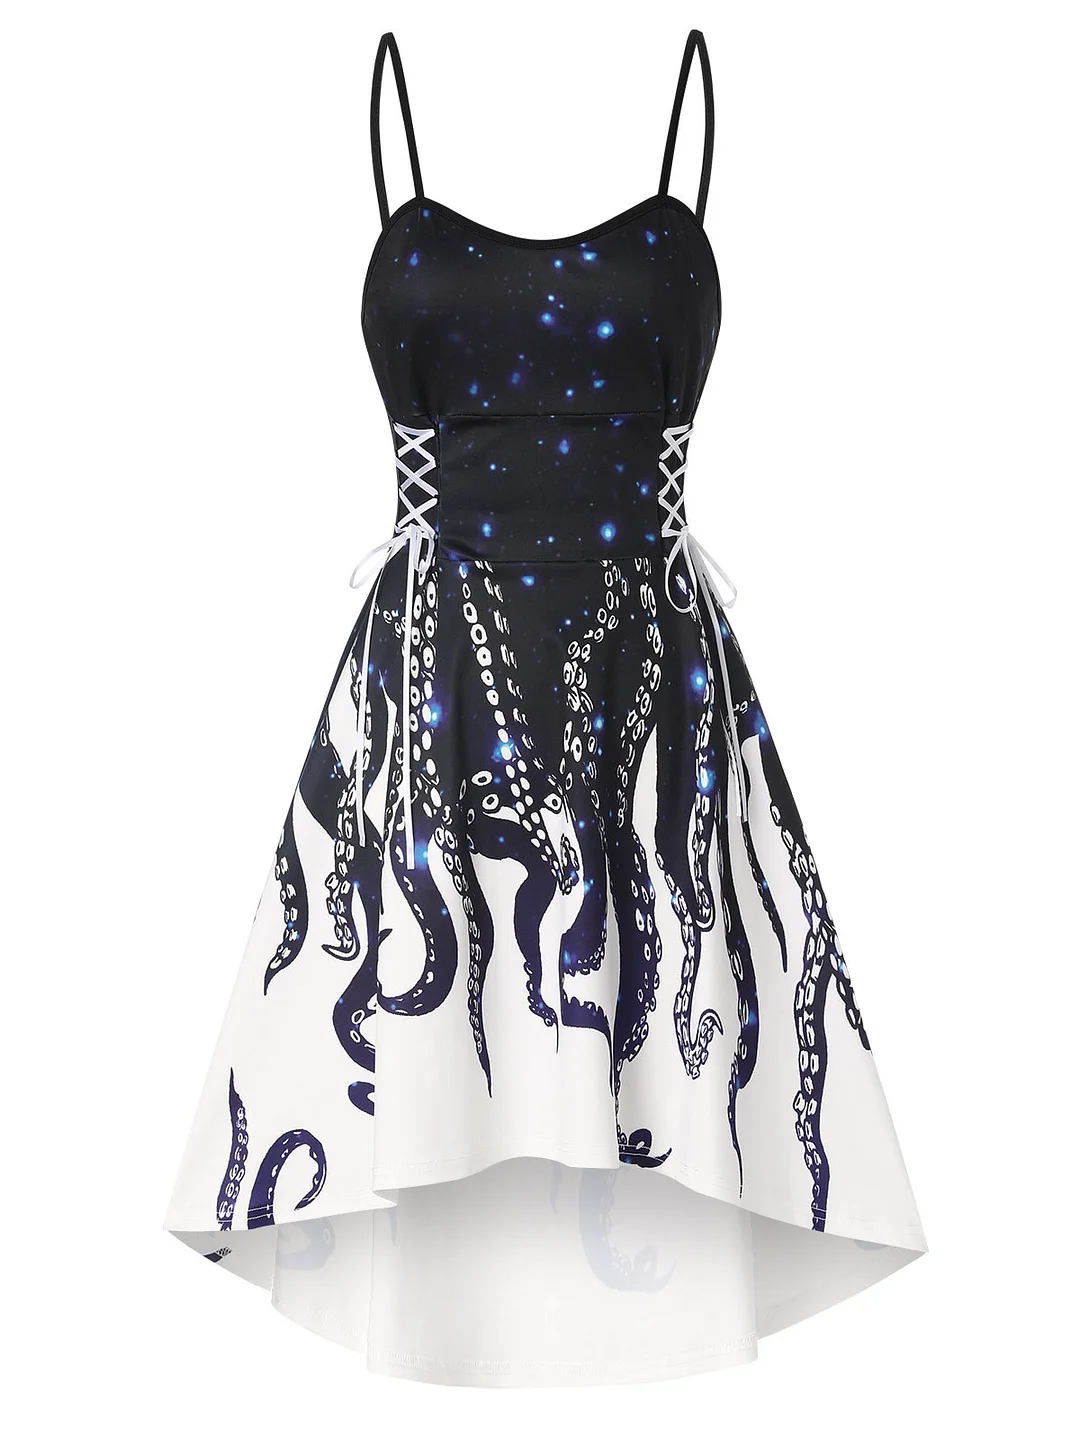 Jangj Party Women Dress Dip Hem Octopus Print Lace Up Dress Empire Waist Sleeveless Fashion Dress Vestidos 2XL